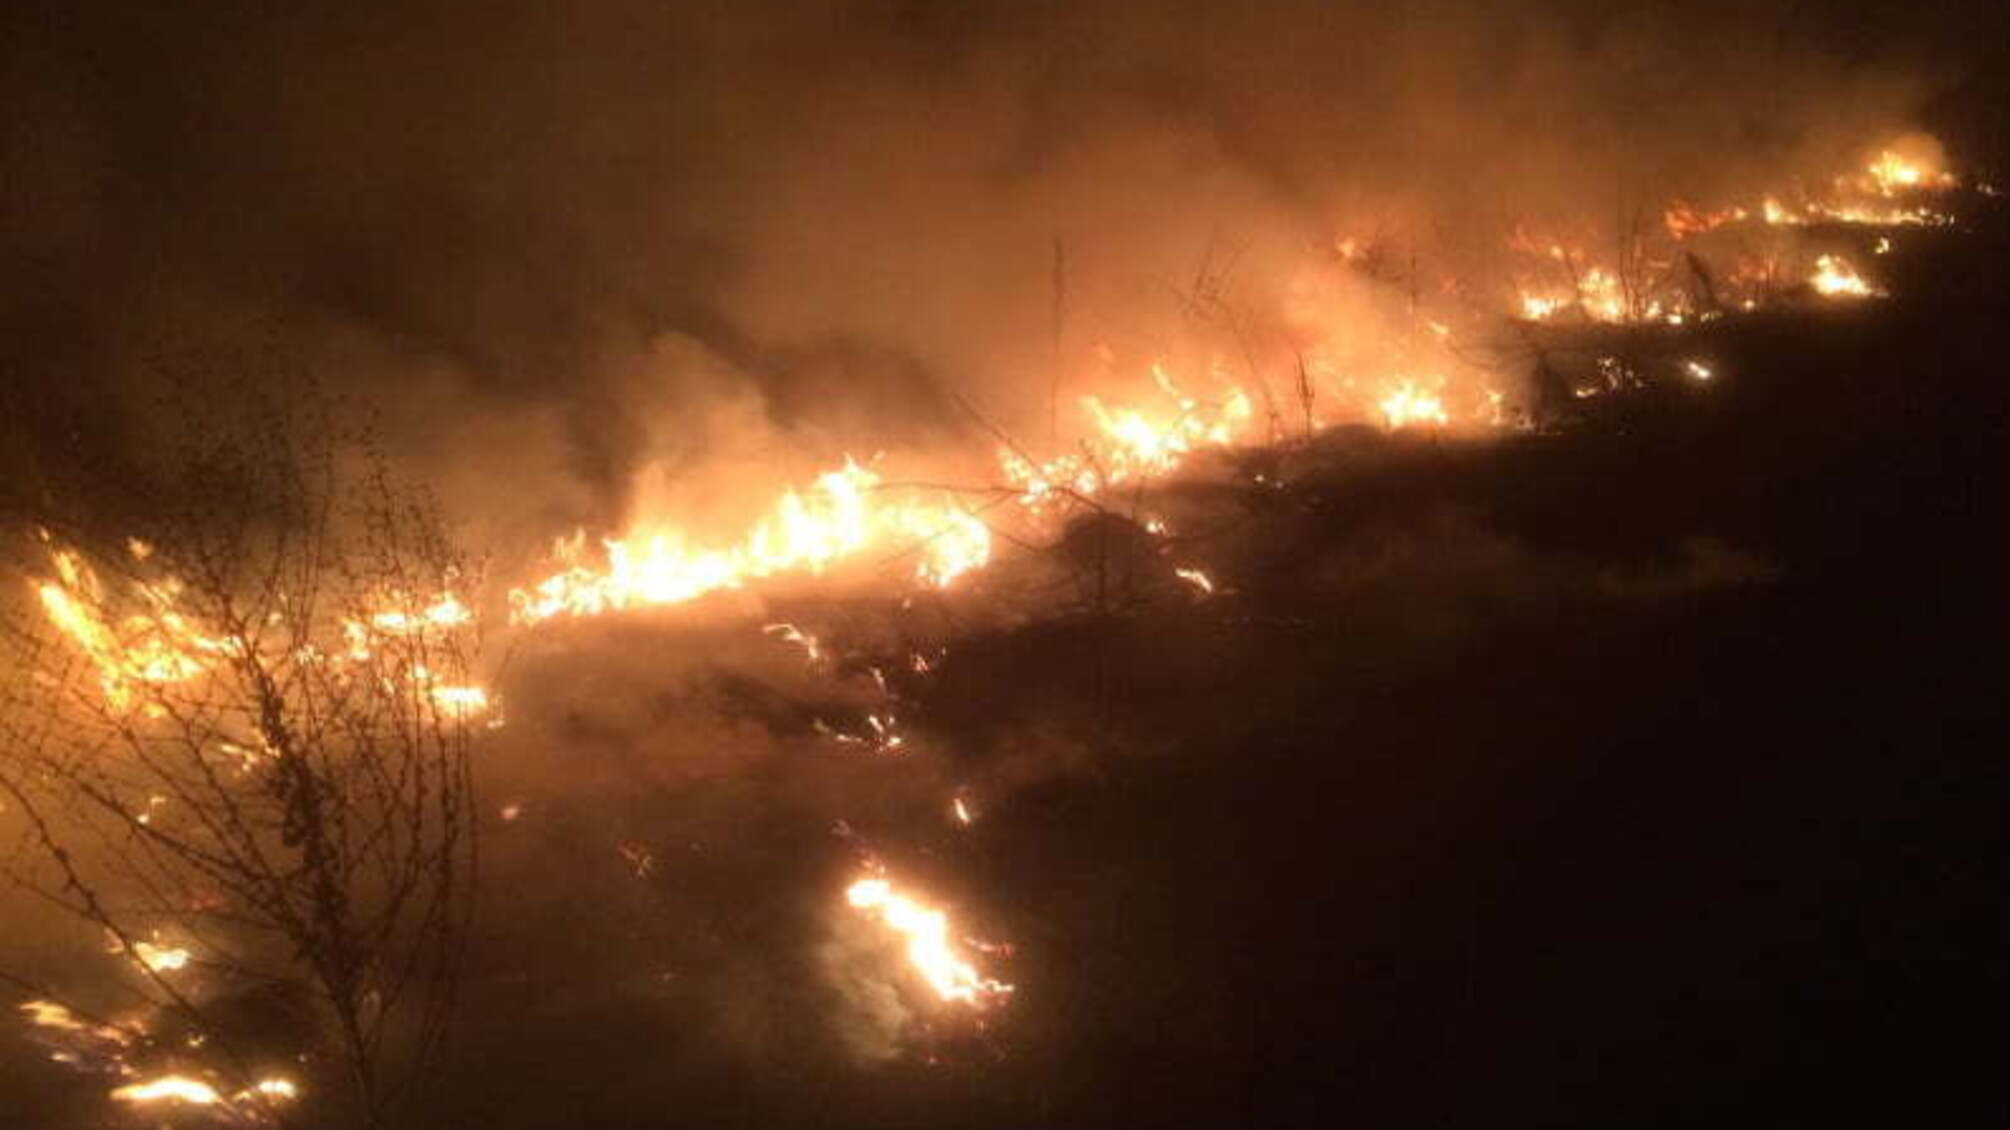 Житомирська область: за добу вогнеборці ліквідували 2 пожежі сухої рослинності